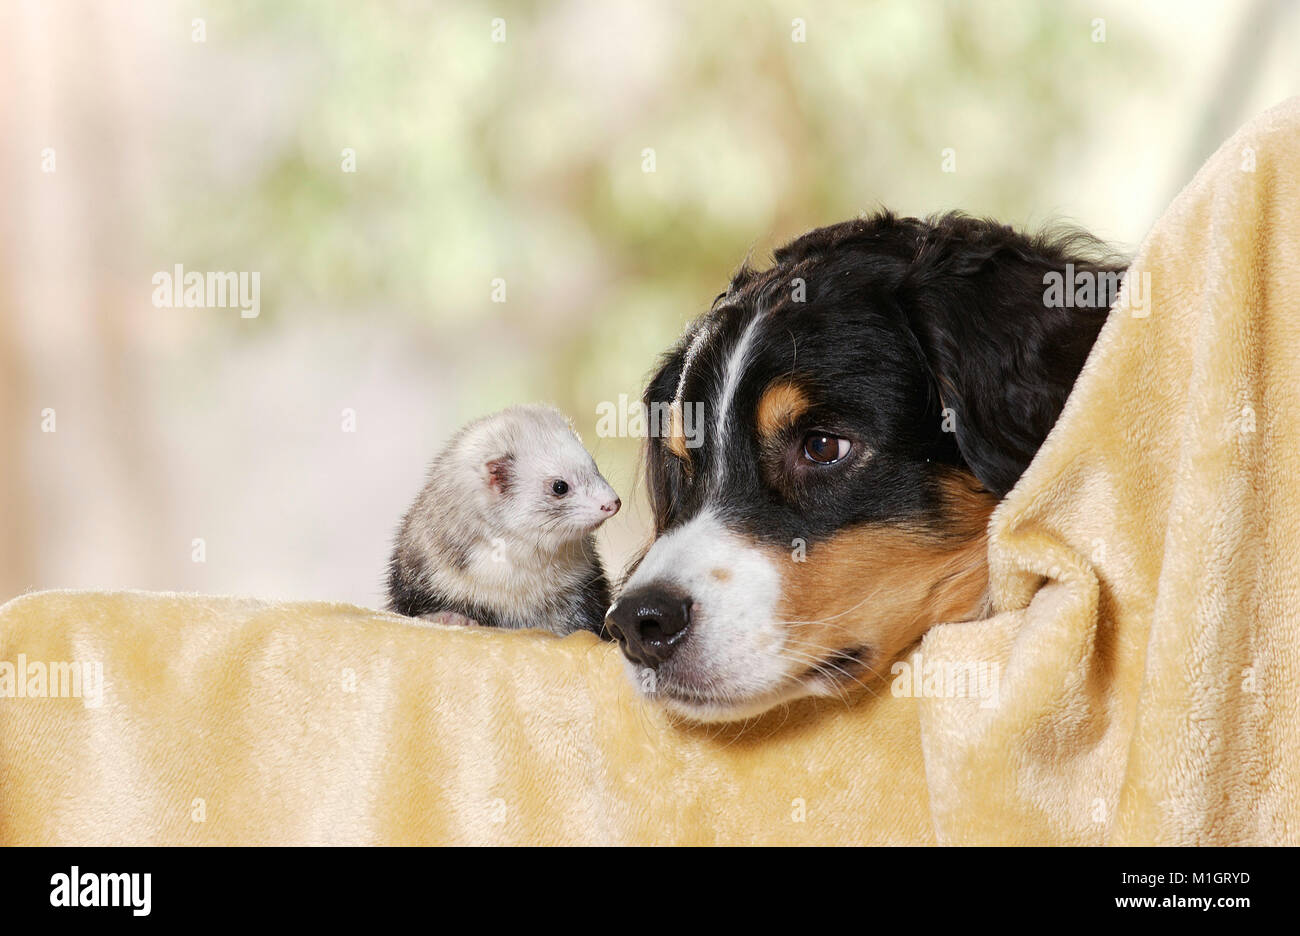 Tier Freundschaft: Australian Shepherd und Frettchen (Mustela putorius furo) auf einer Decke Stockfoto